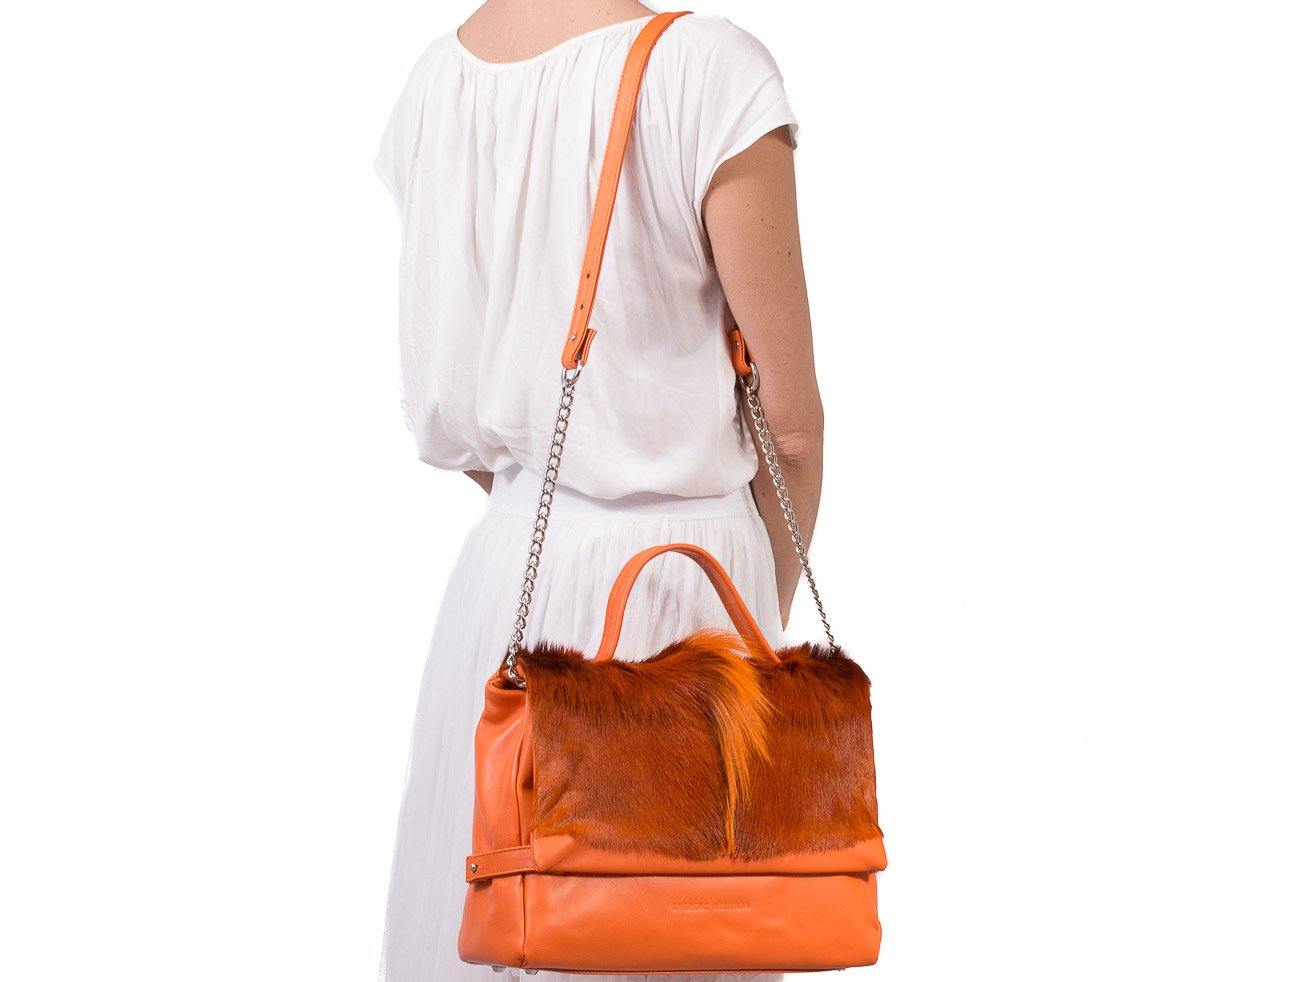 sherene melinda springbok hair-on-hide orange leather smith tote bag fan front strap